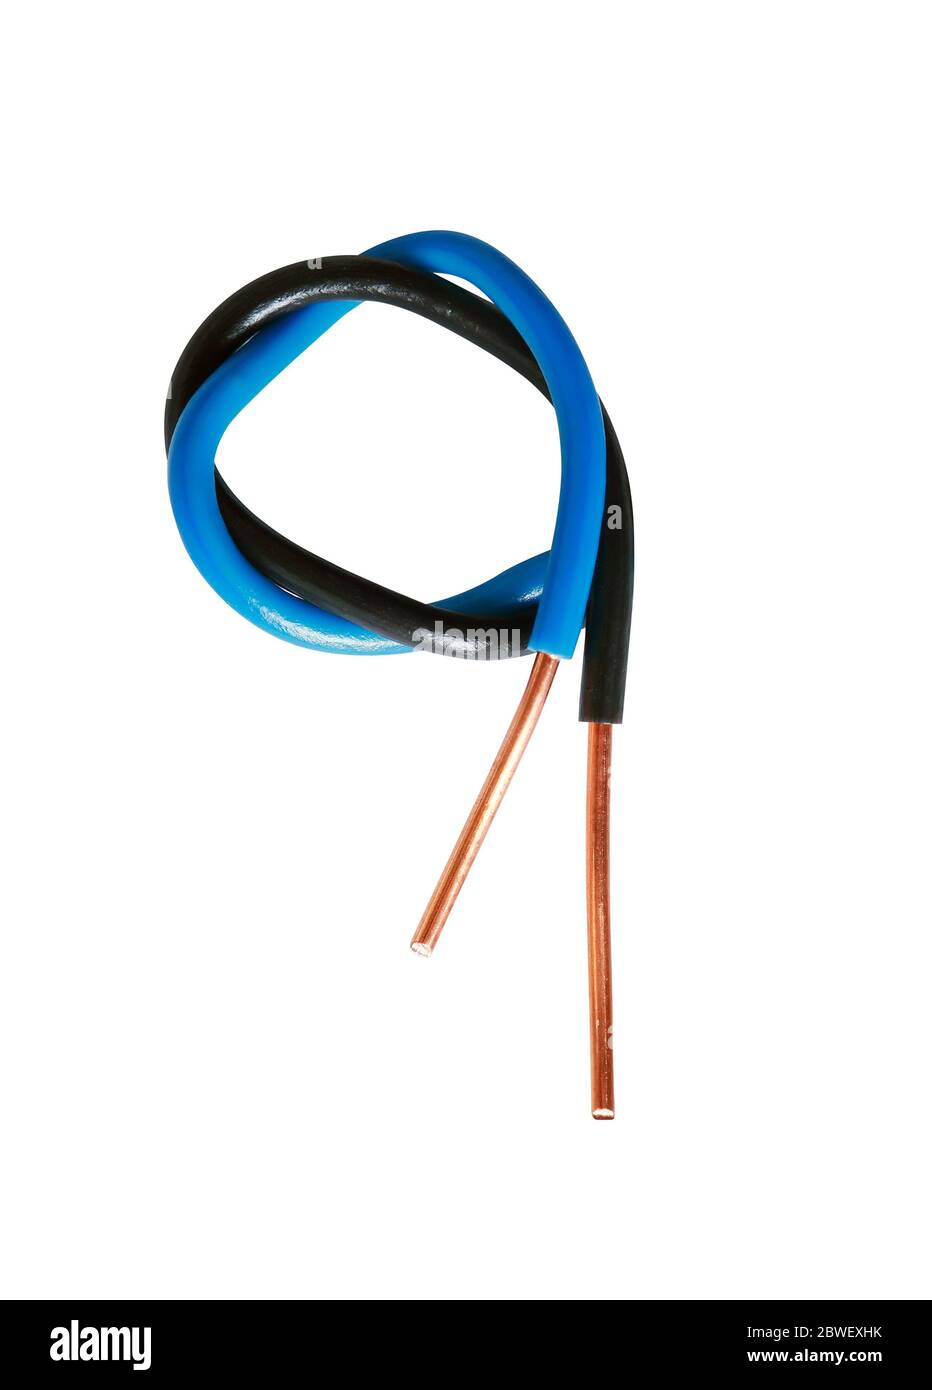 Câble électrique bleu et noir isolé sur fond blanc Banque D'Images